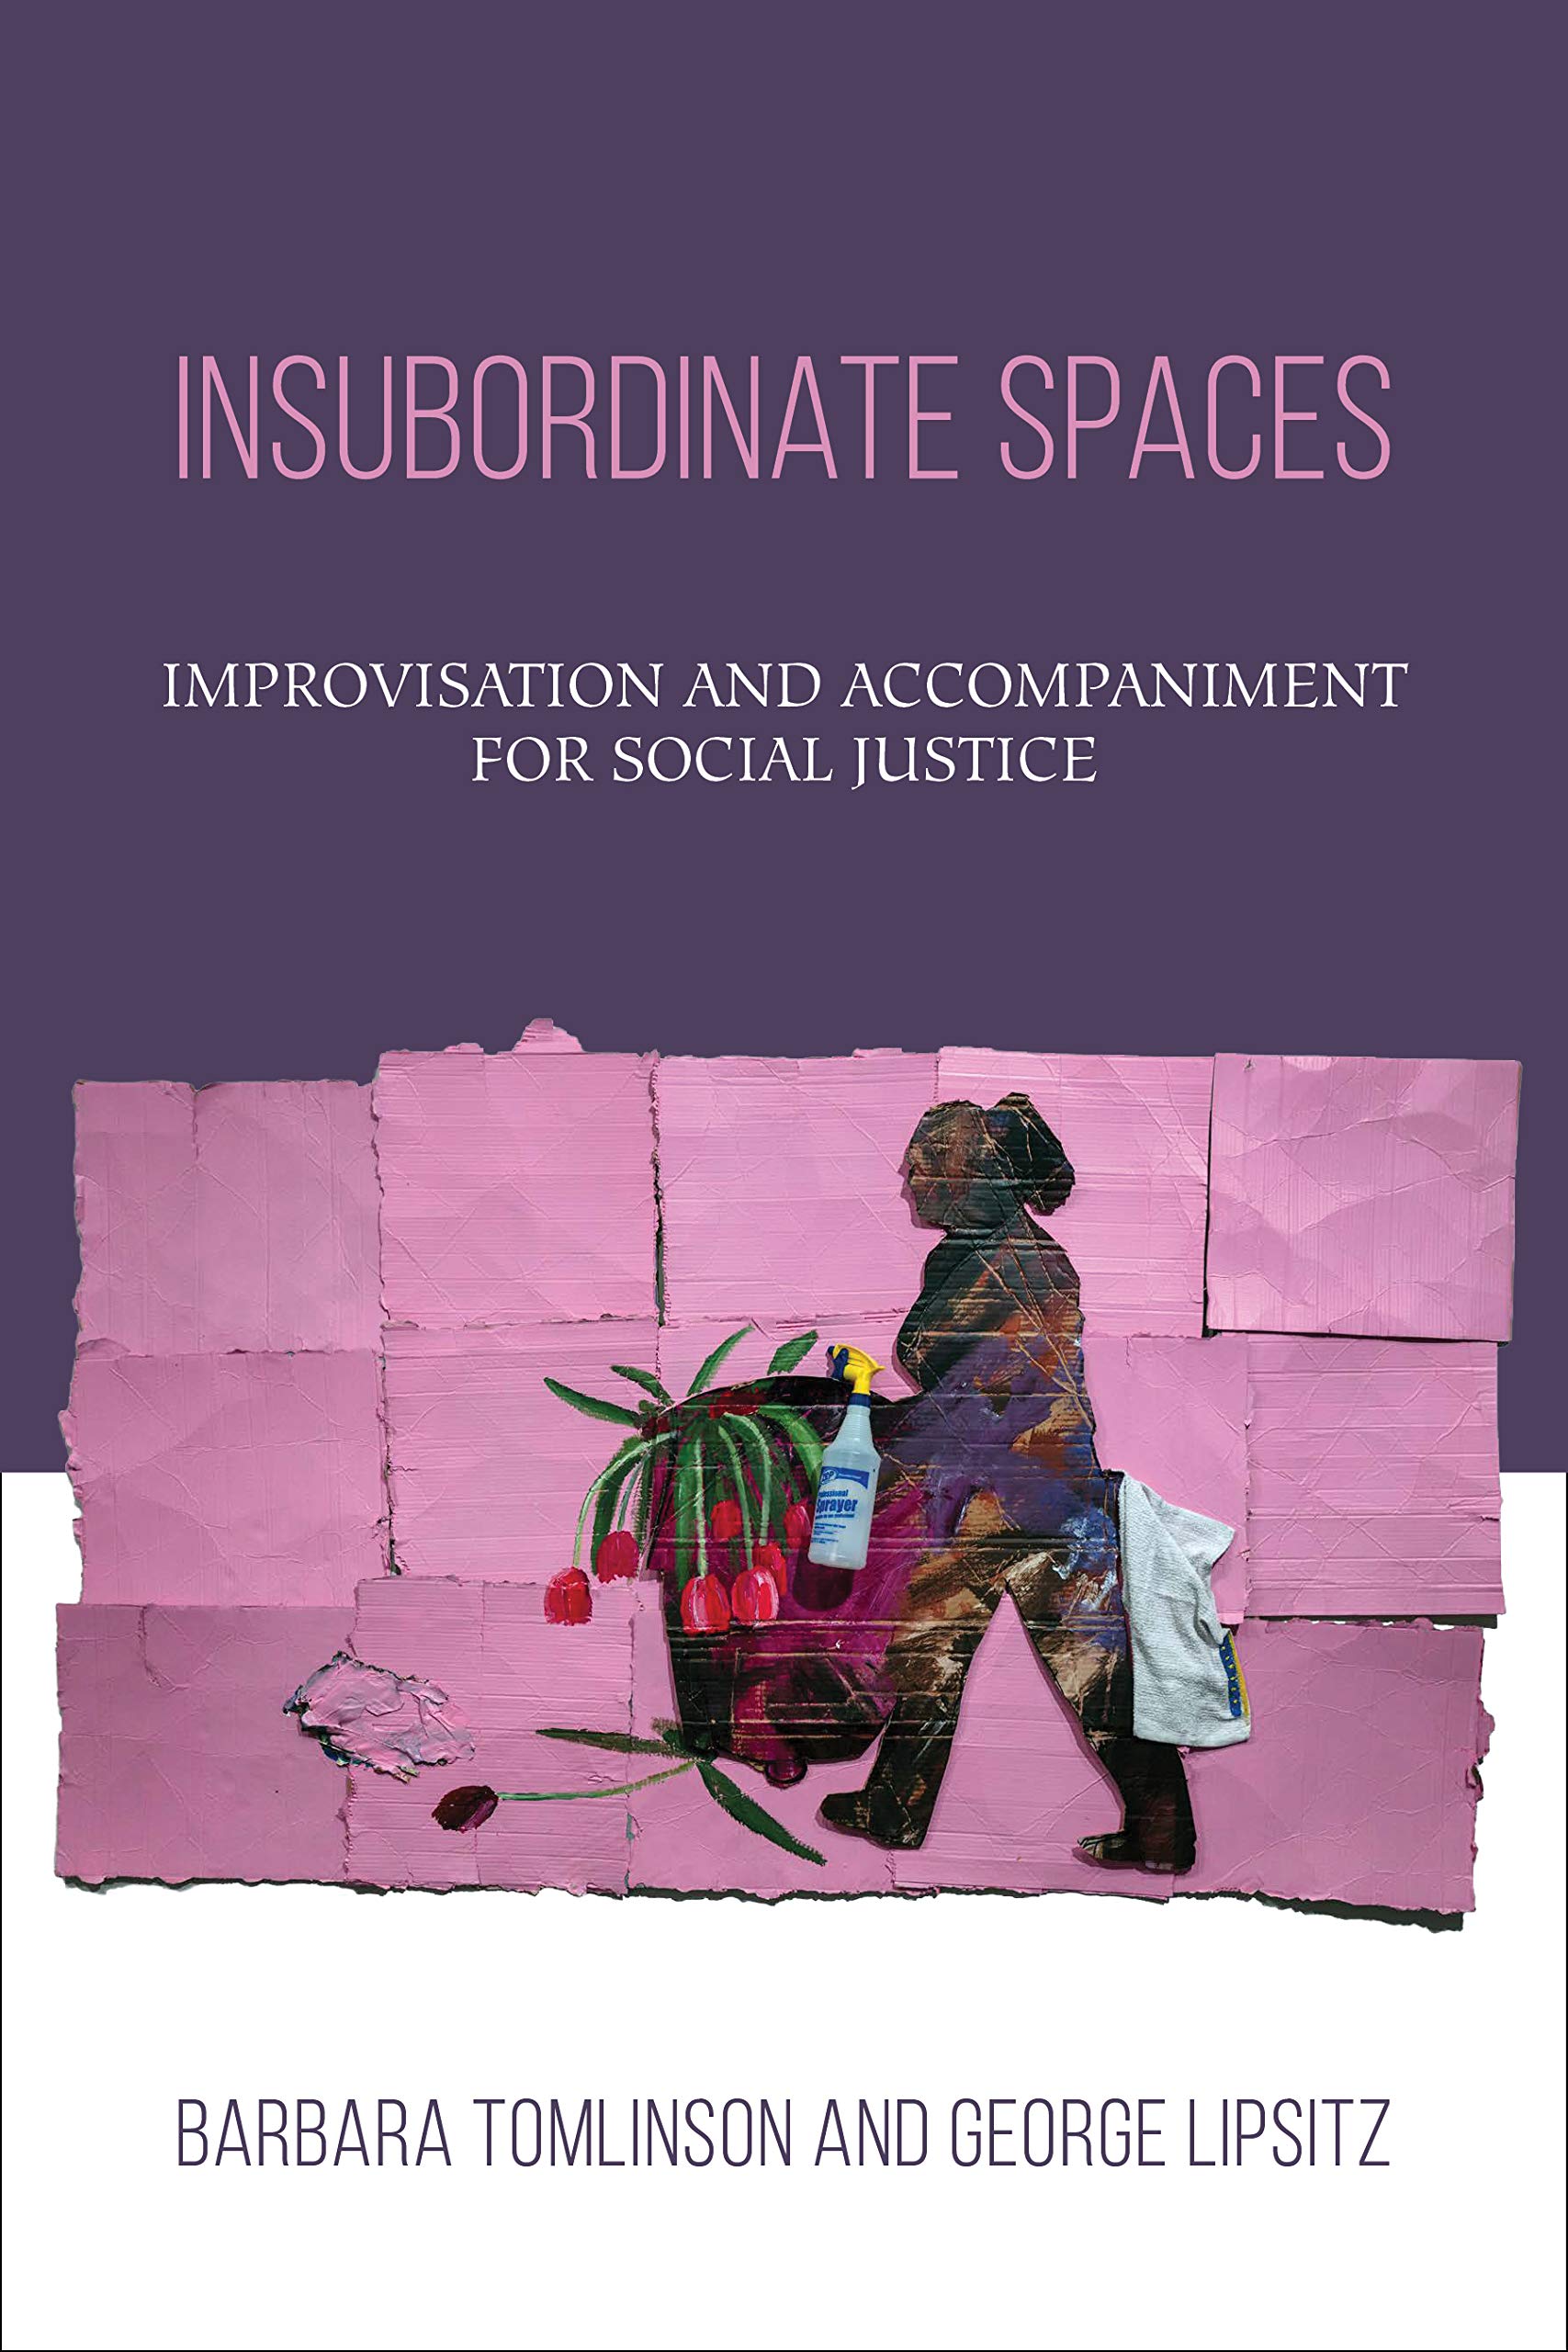 Insubordinate Spaces (Barbara Tomlinson, George Lipsitz)